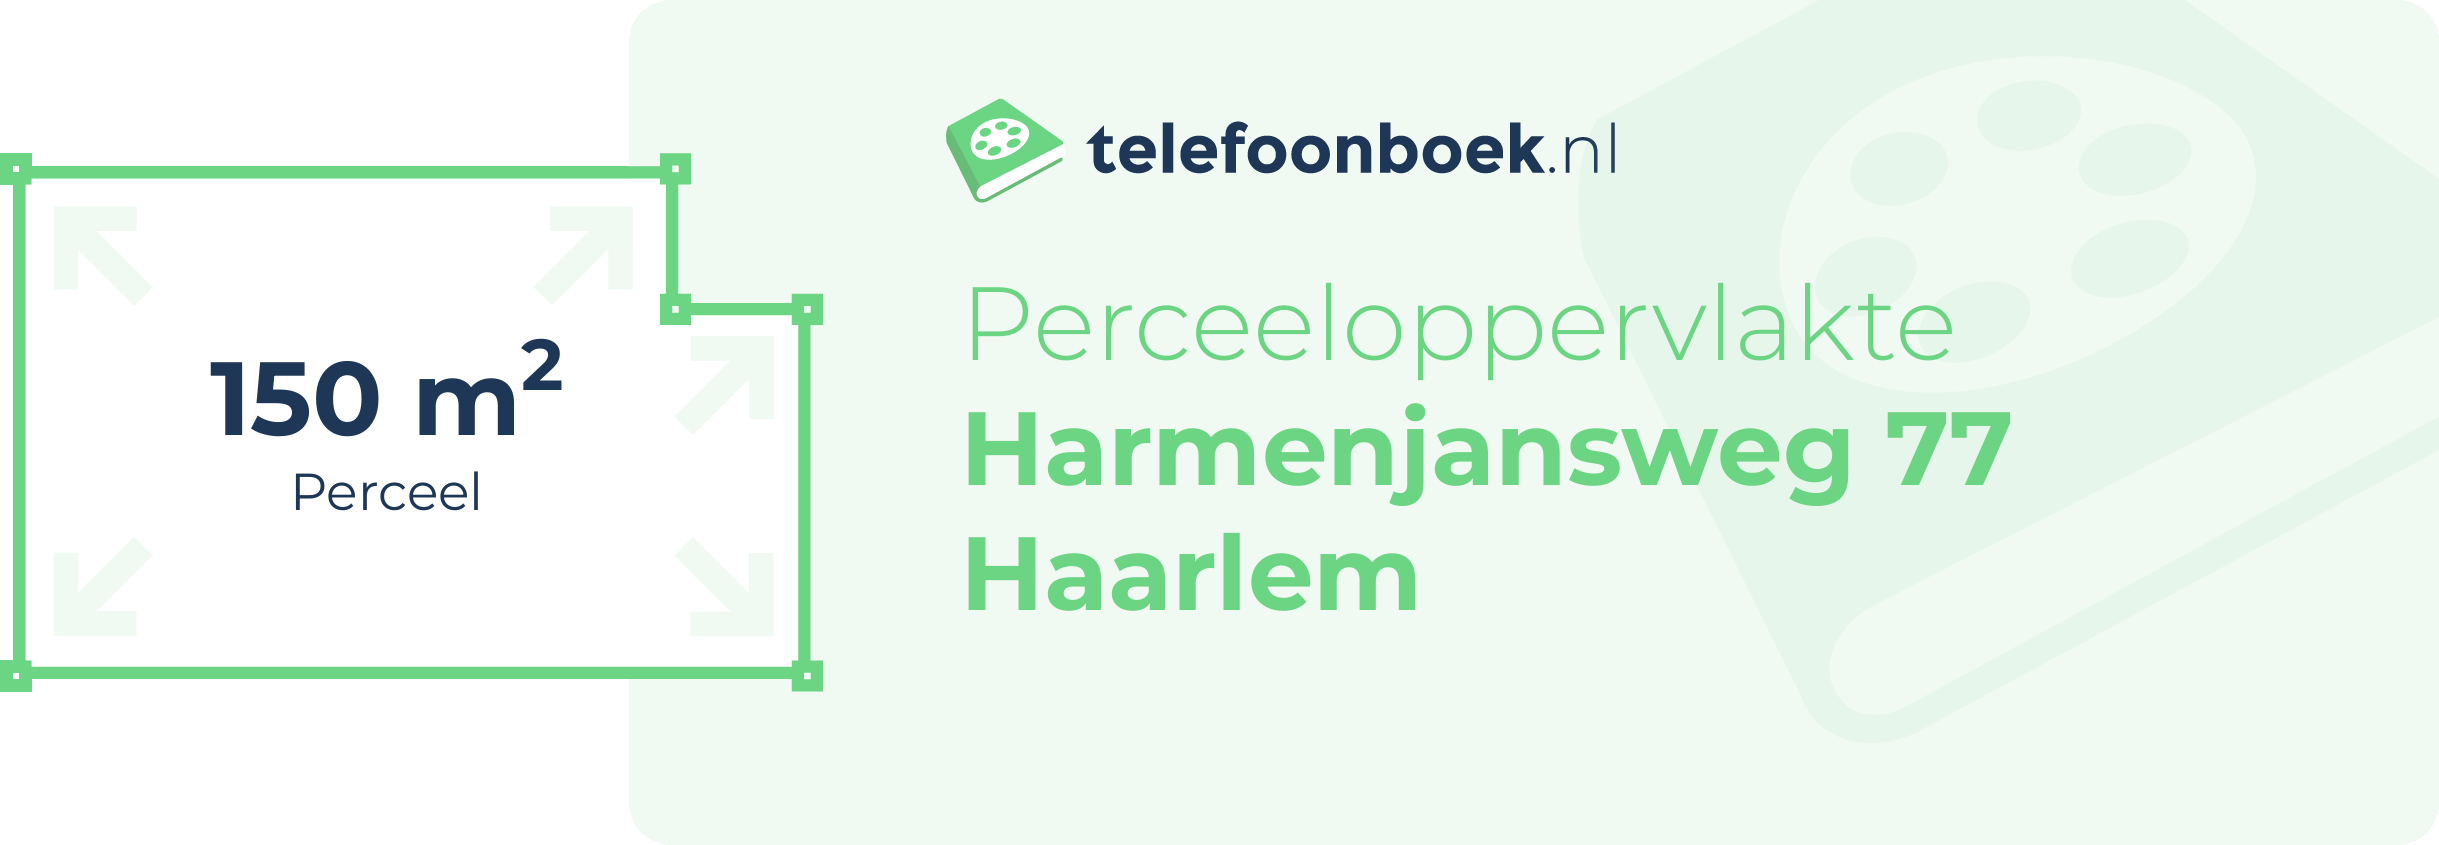 Perceeloppervlakte Harmenjansweg 77 Haarlem